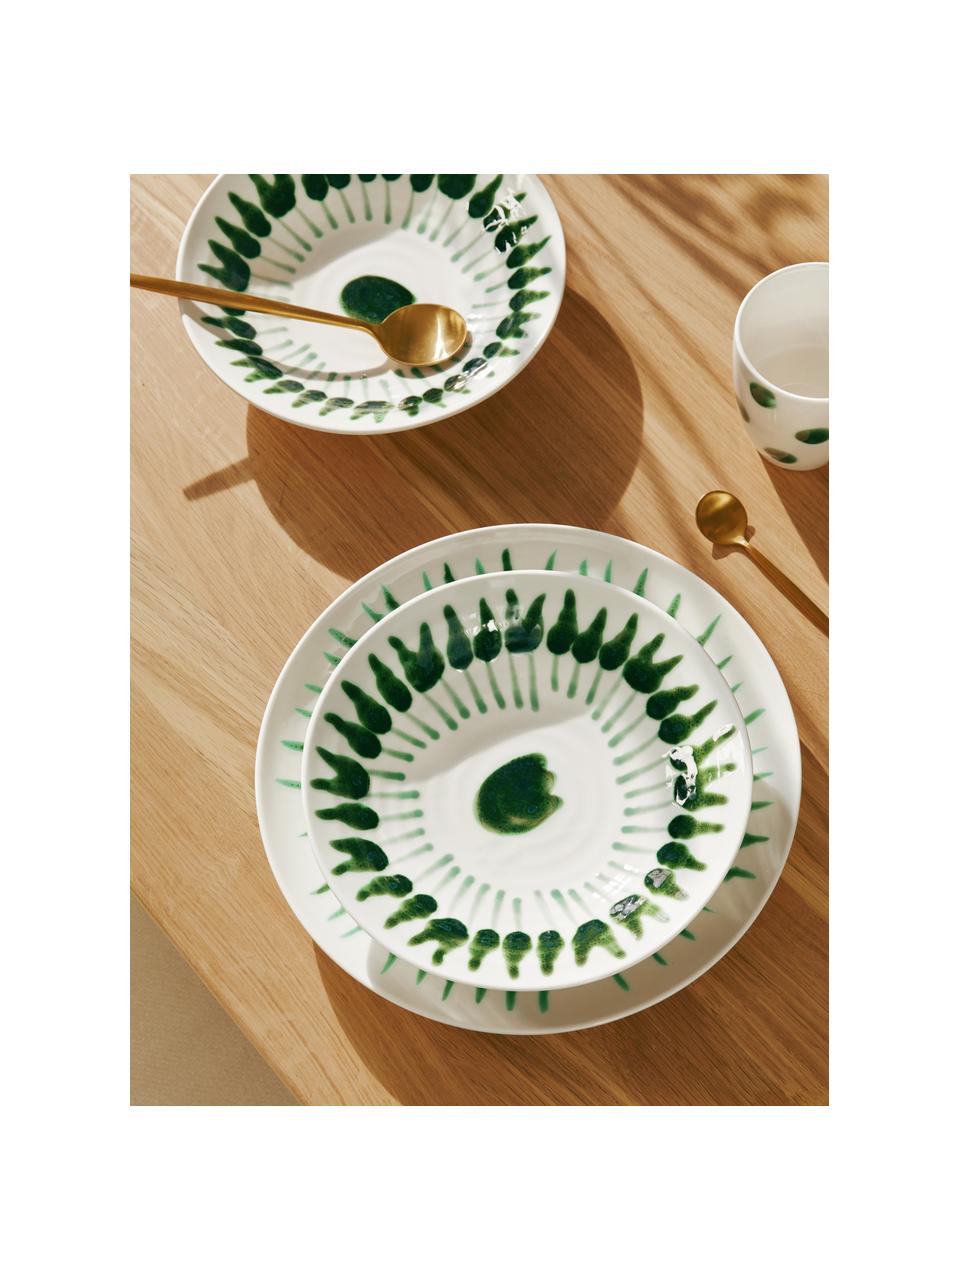 Handbemalter Suppenteller Sparks mit Pinselstrich-Dekor, Steingut, Weiß, Grün, Ø 22 cm